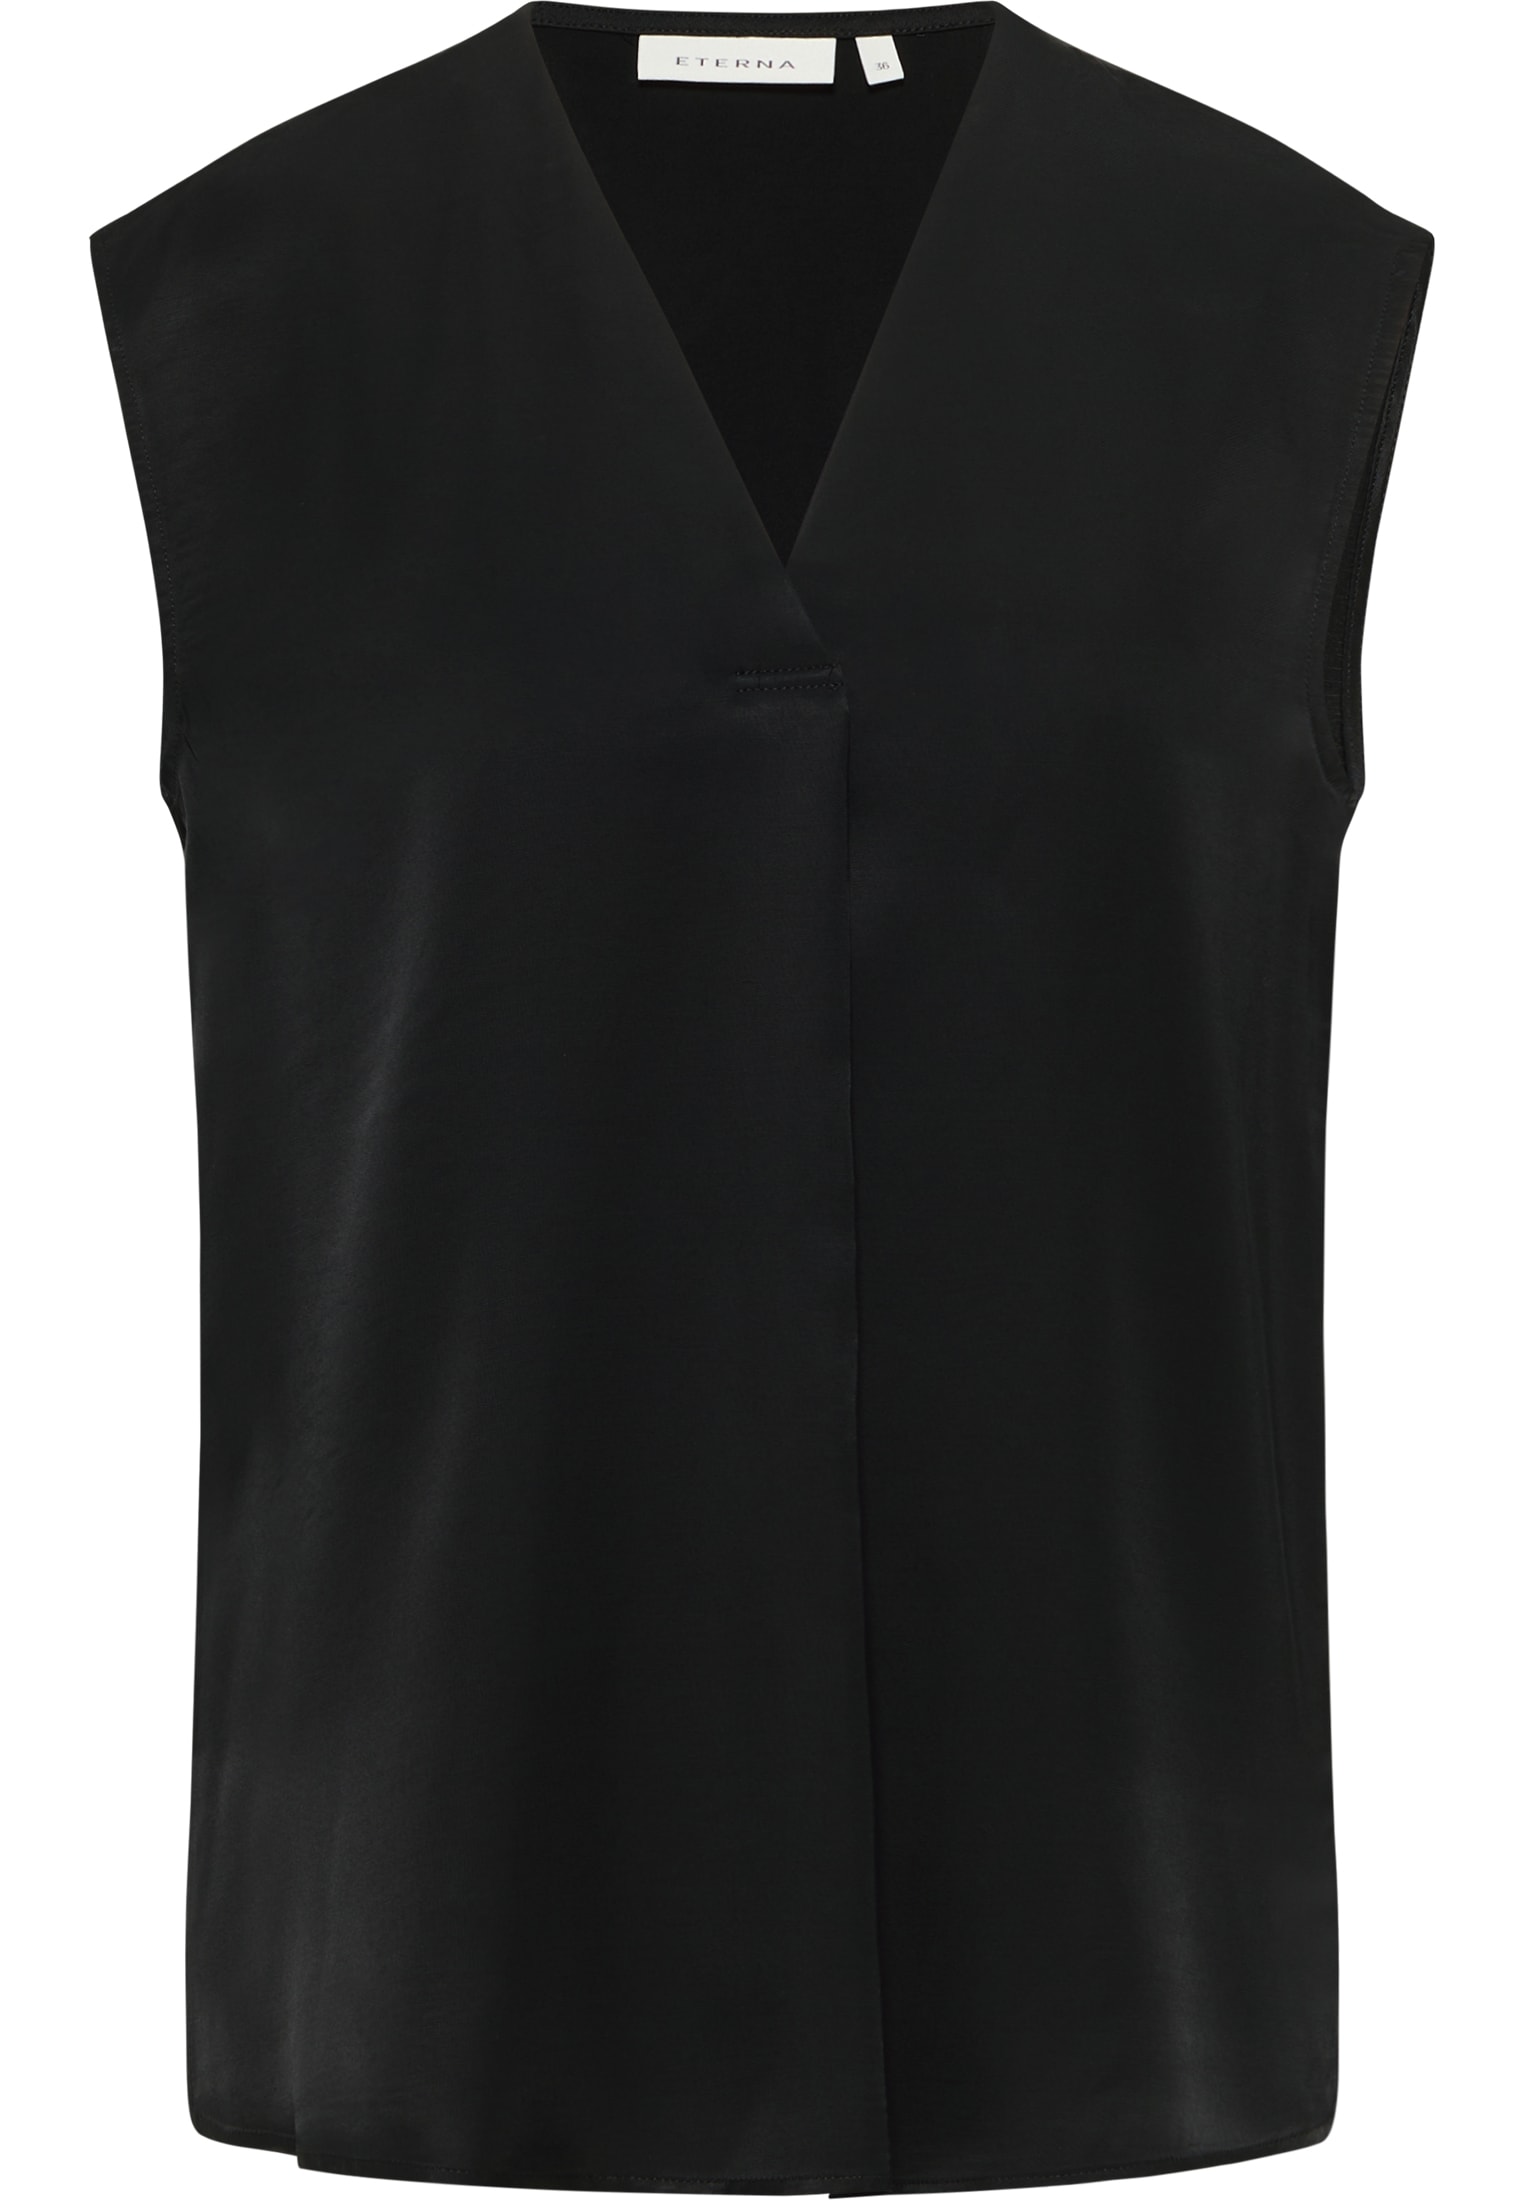 Bluse | | schwarz 2BL03905-03-91-34-sl Viscose ohne | Arm in 34 | unifarben schwarz Shirt